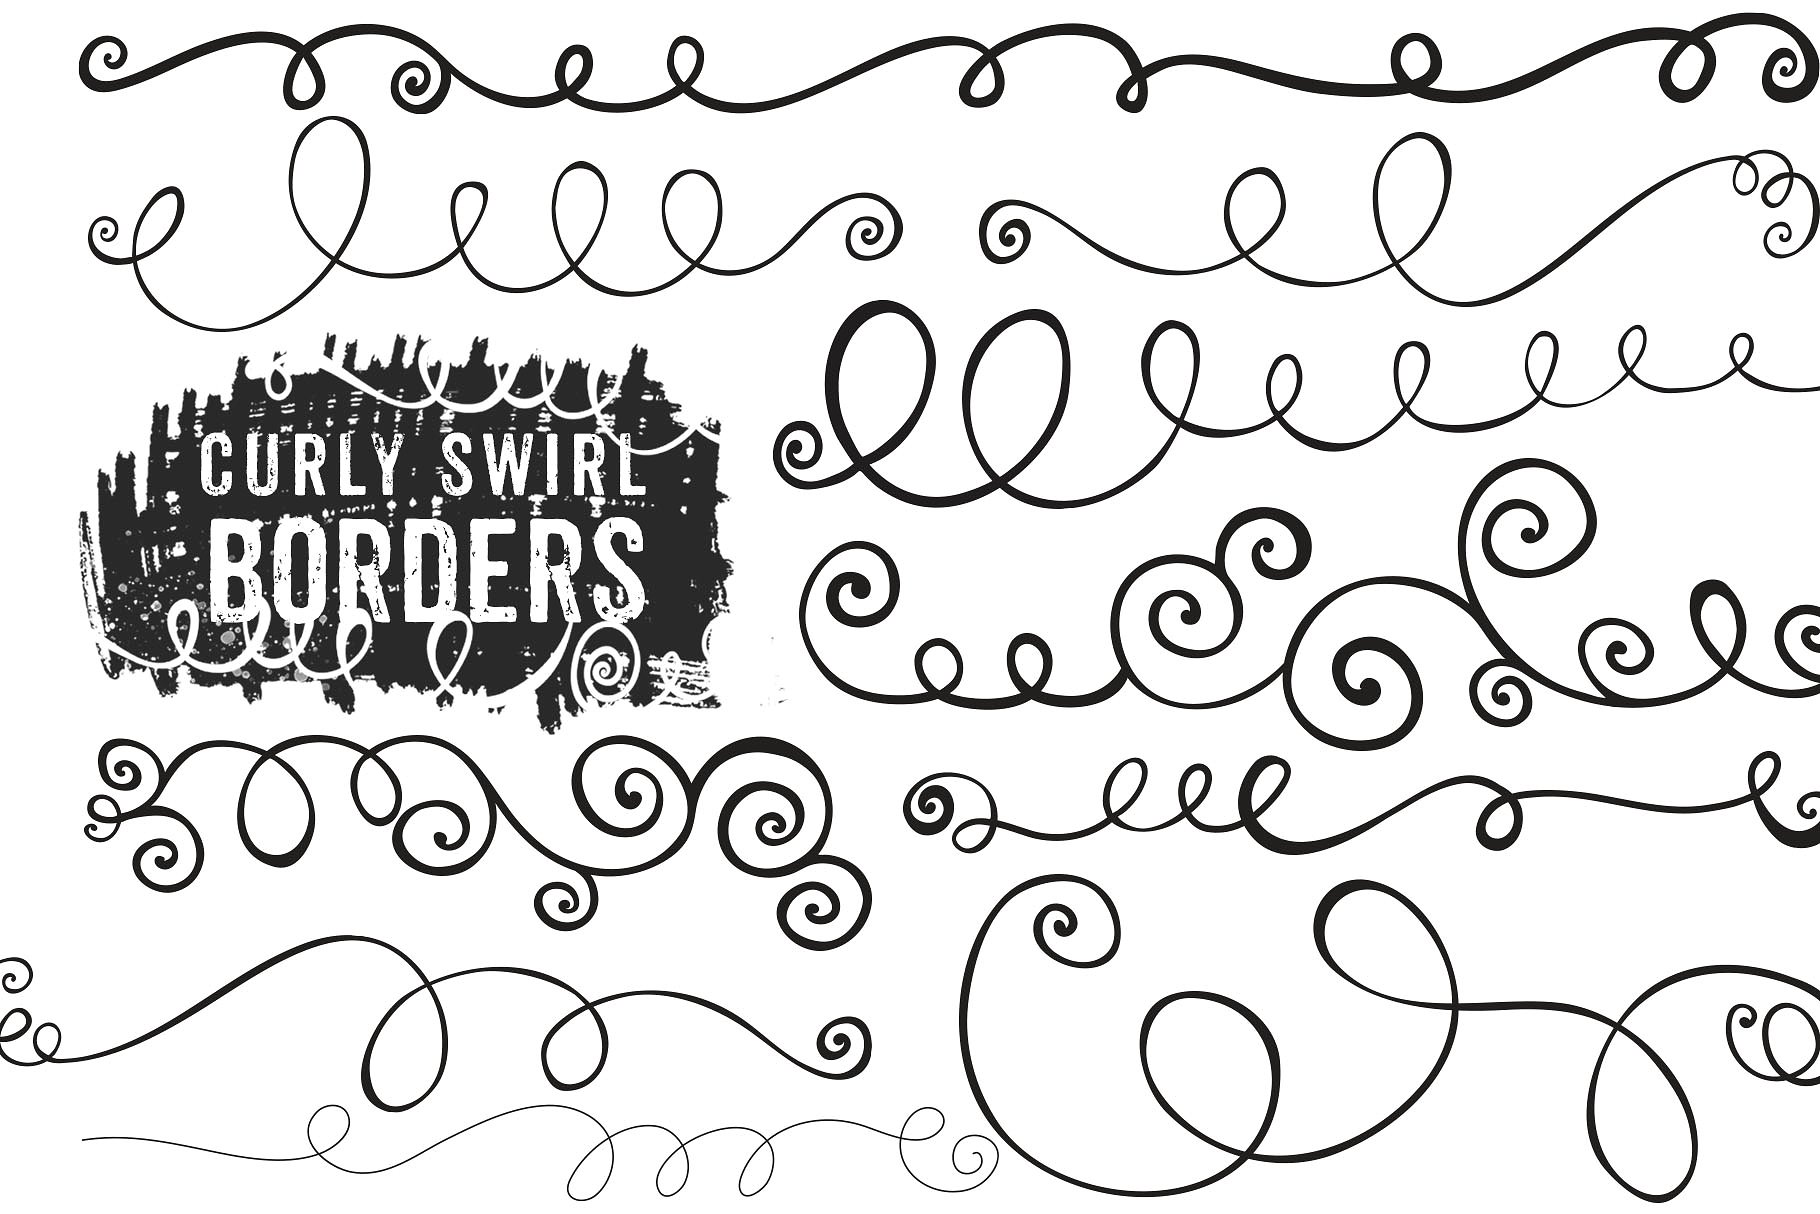 曲线卷曲的笔刷效果Swirl Borders - PNG